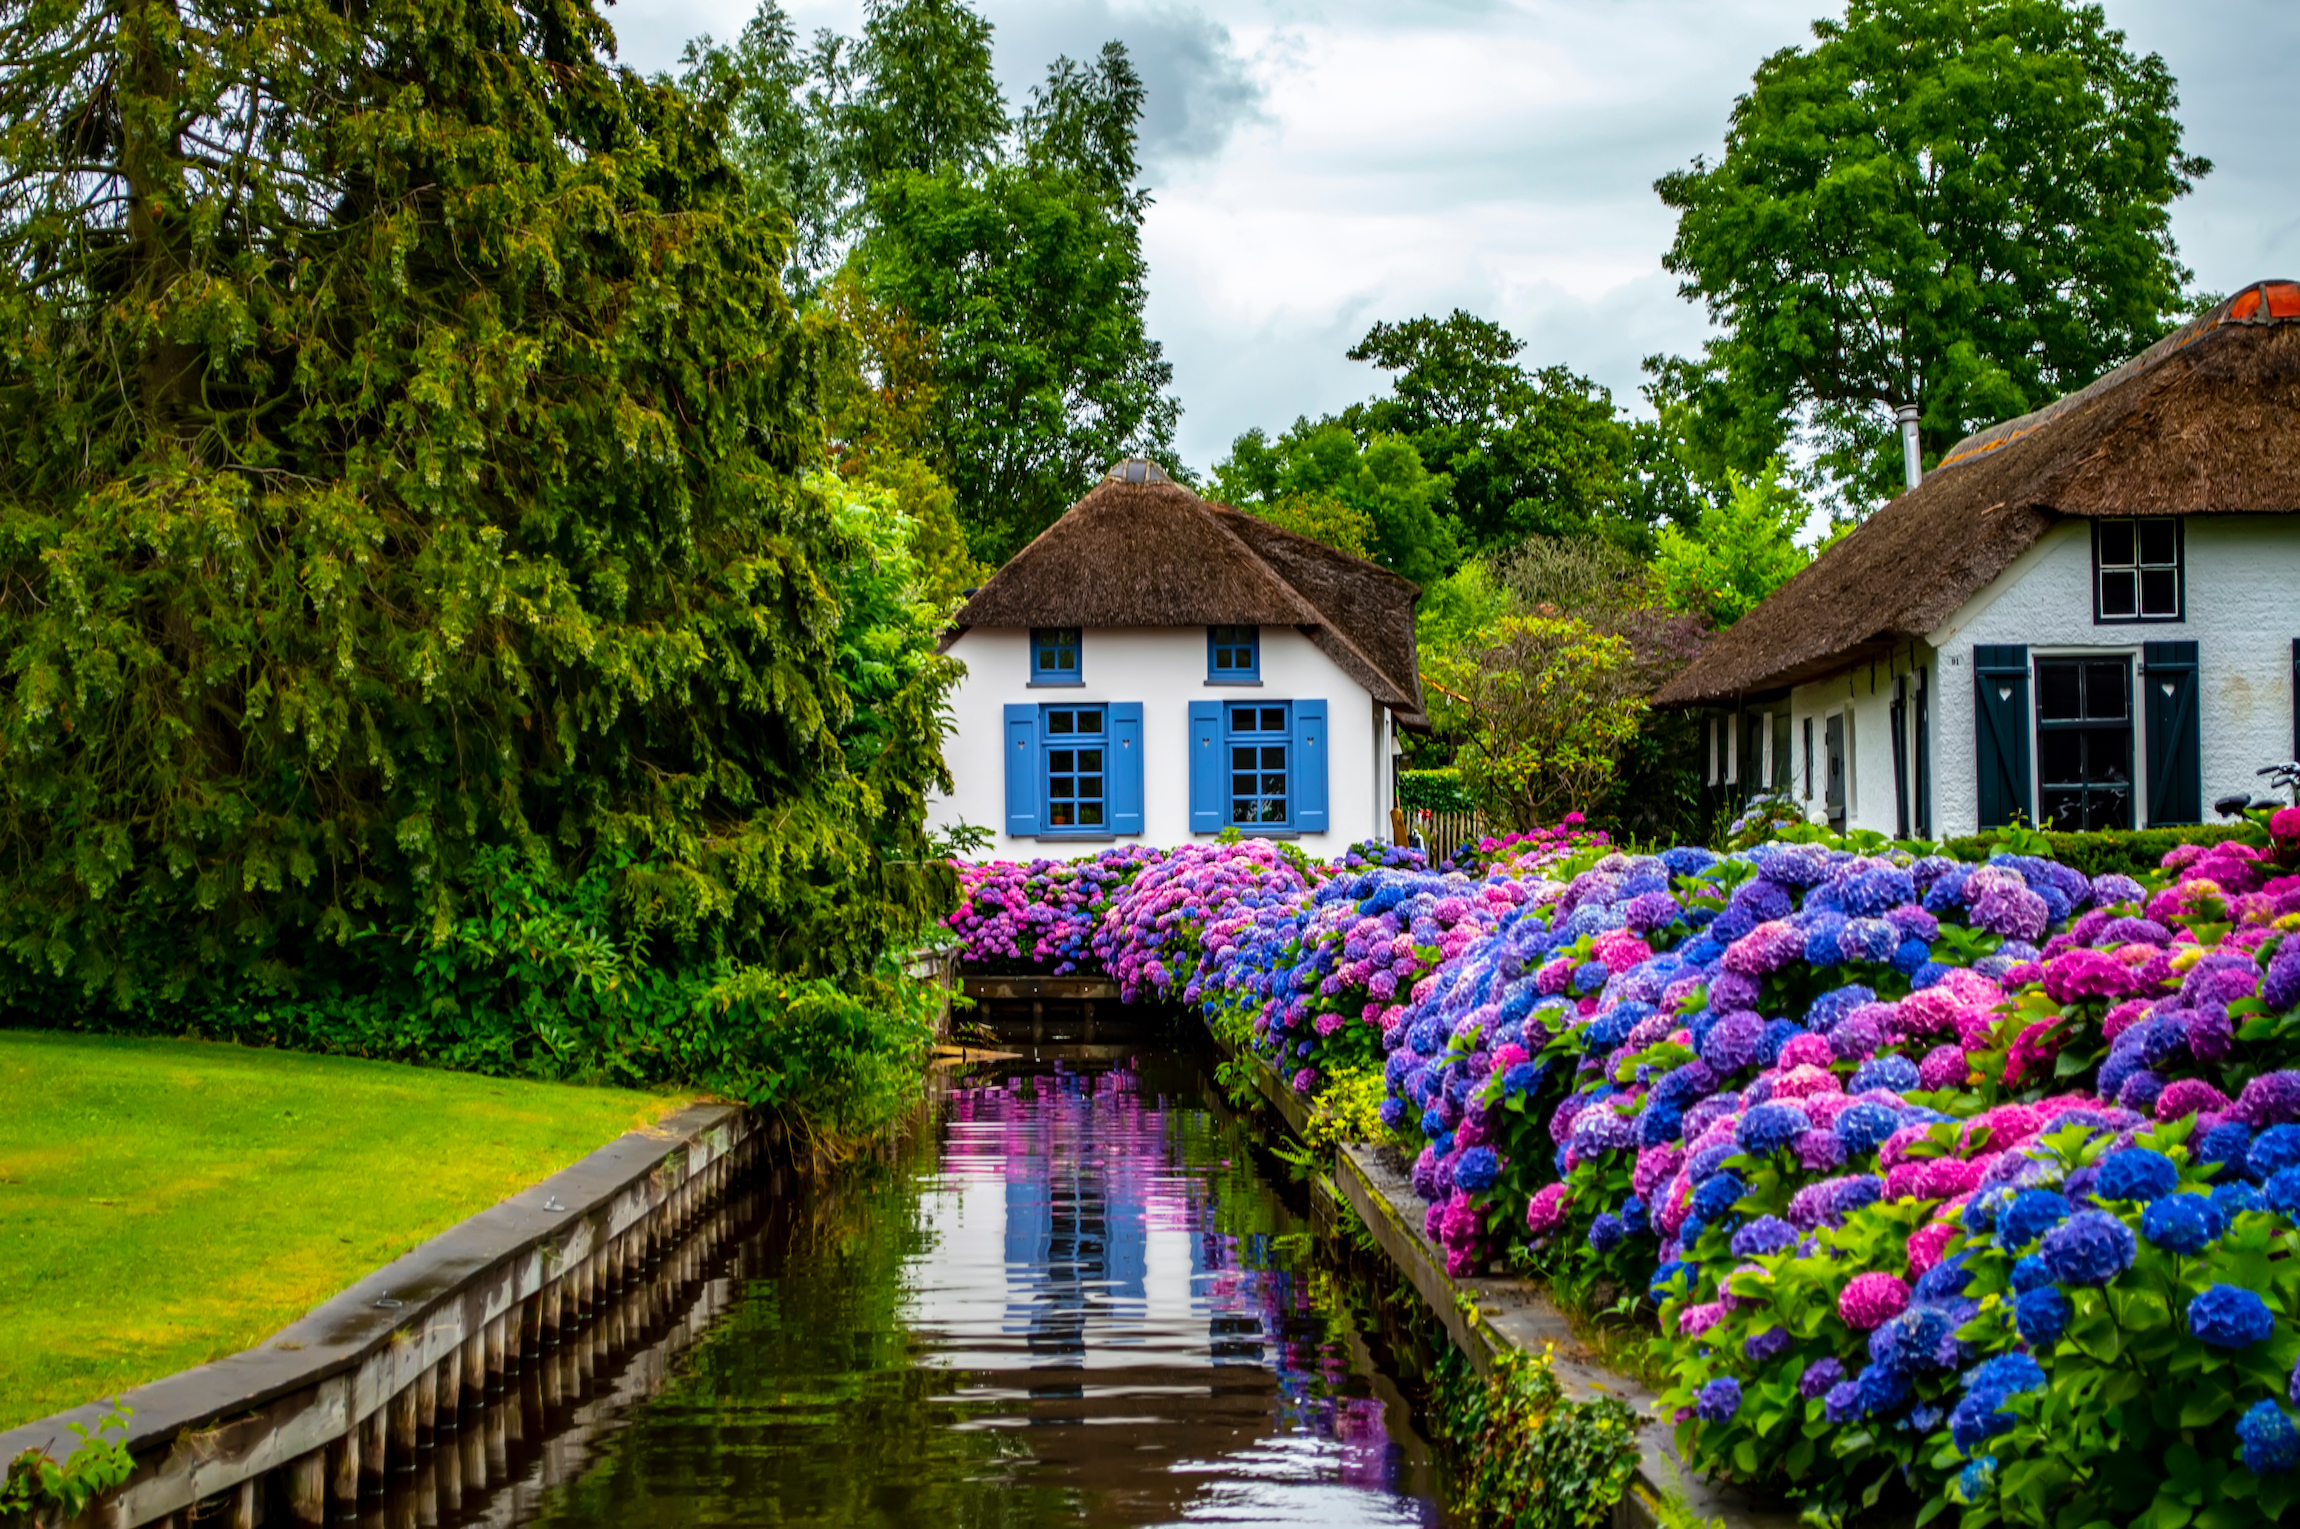 Giethoorn, Holandia - 6 lipca 2019 r.: Spokojny widok na wioskę Giethoorn w Holandii, z pięknymi wiejskimi domami, kanałami wodnymi i kolorowymi kwiatami.